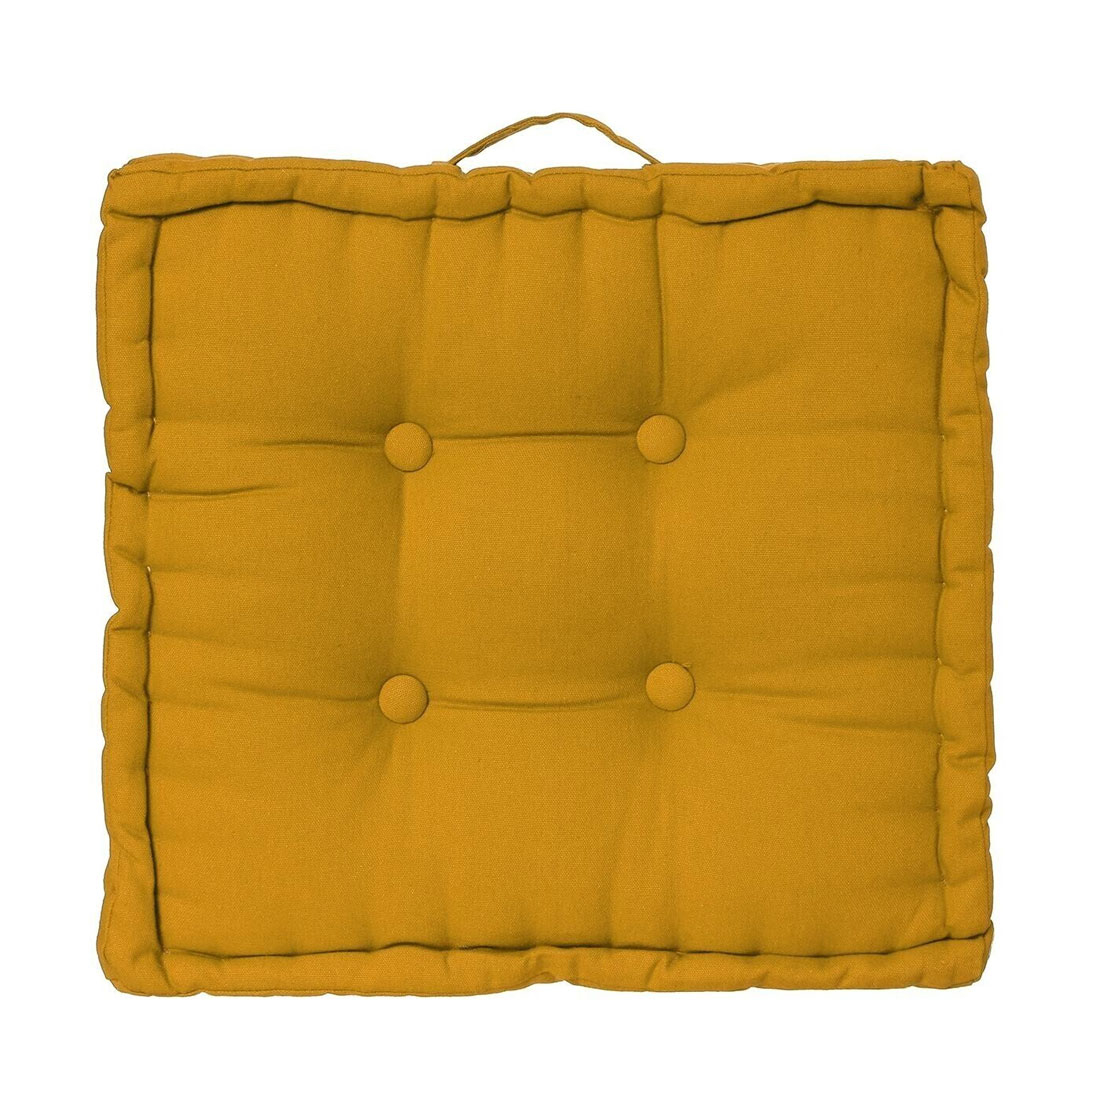 Μαξιλάρα Δαπέδου (40x40x8) A-S Floor Cushion Yellow 103852R